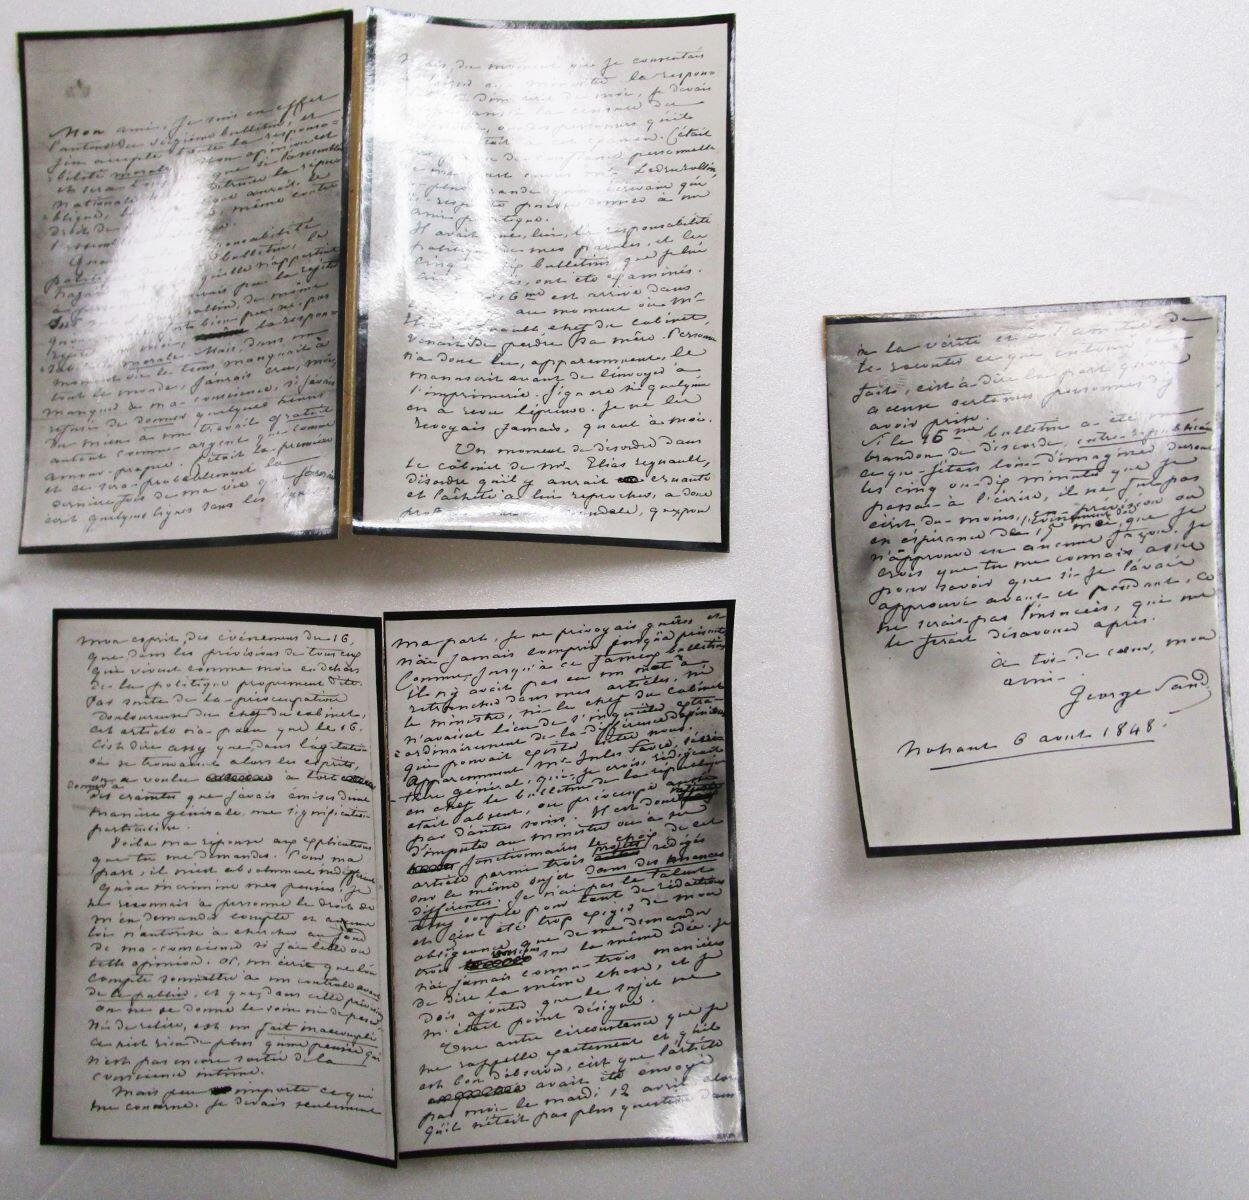 Lettre autographe de George SAND à Frédéric GIRERD Représentant du Peuple déclarant qu’elle est bien l’auteur du 16ème Bulletin de la République.